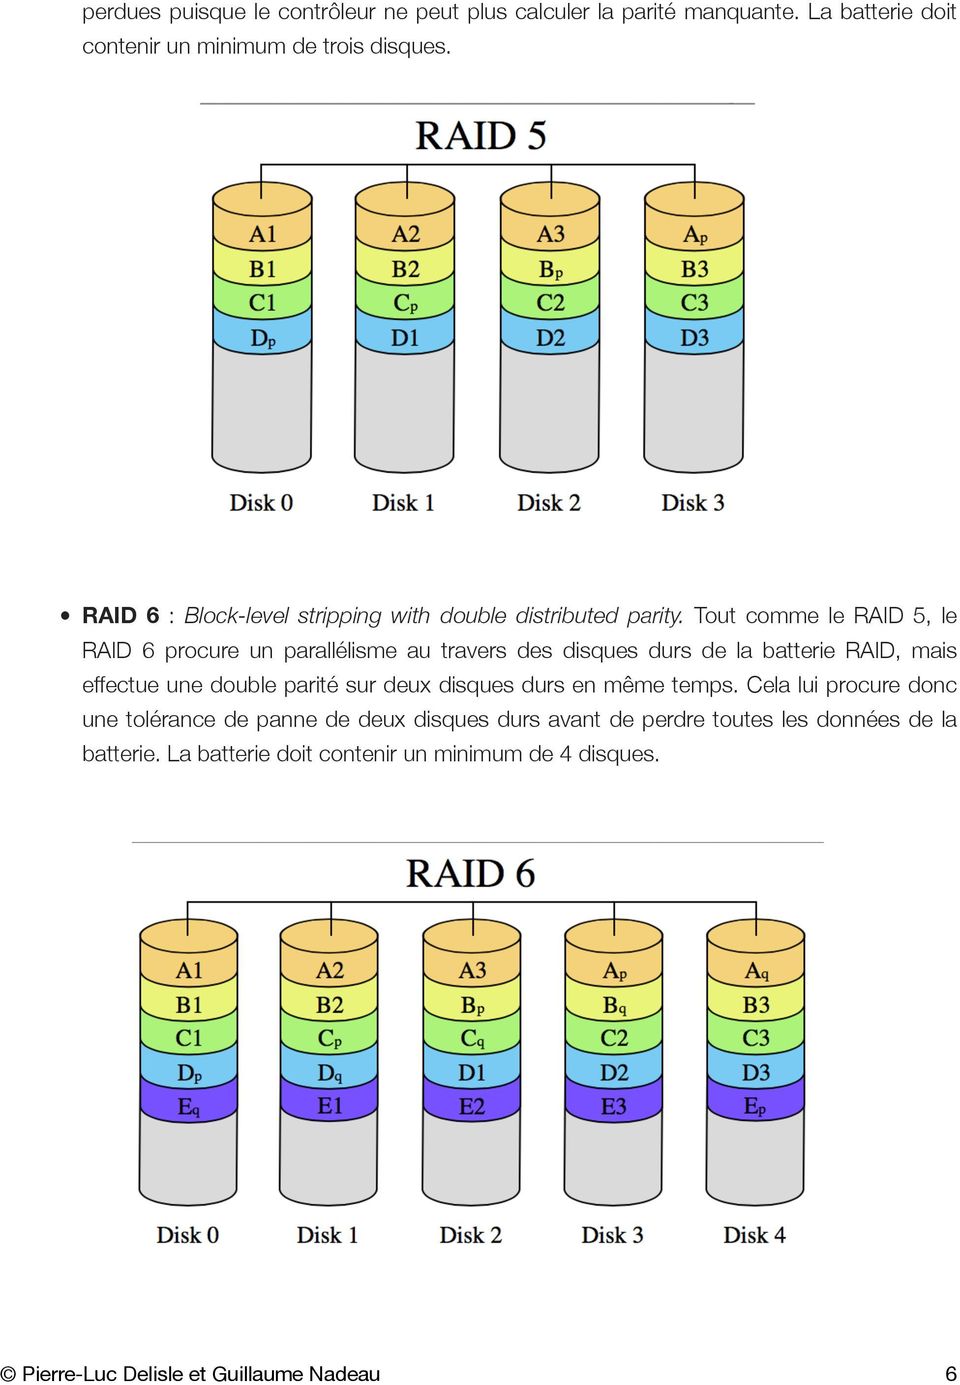 Tout comme le RAID 5, le RAID 6 procure un parallélisme au travers des disques durs de la batterie RAID, mais effectue une double